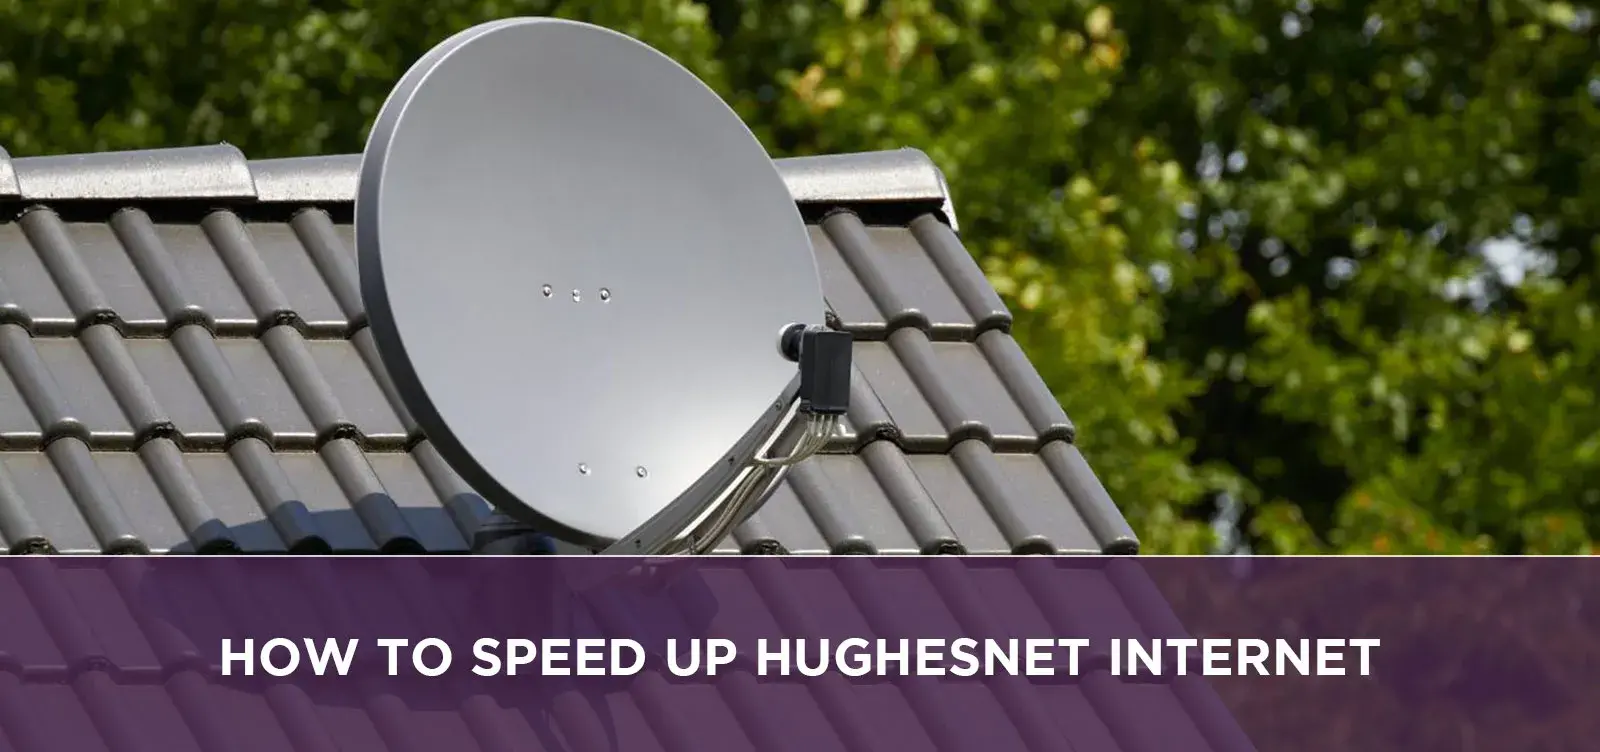 How To Speed Up Hughesnet Internet?